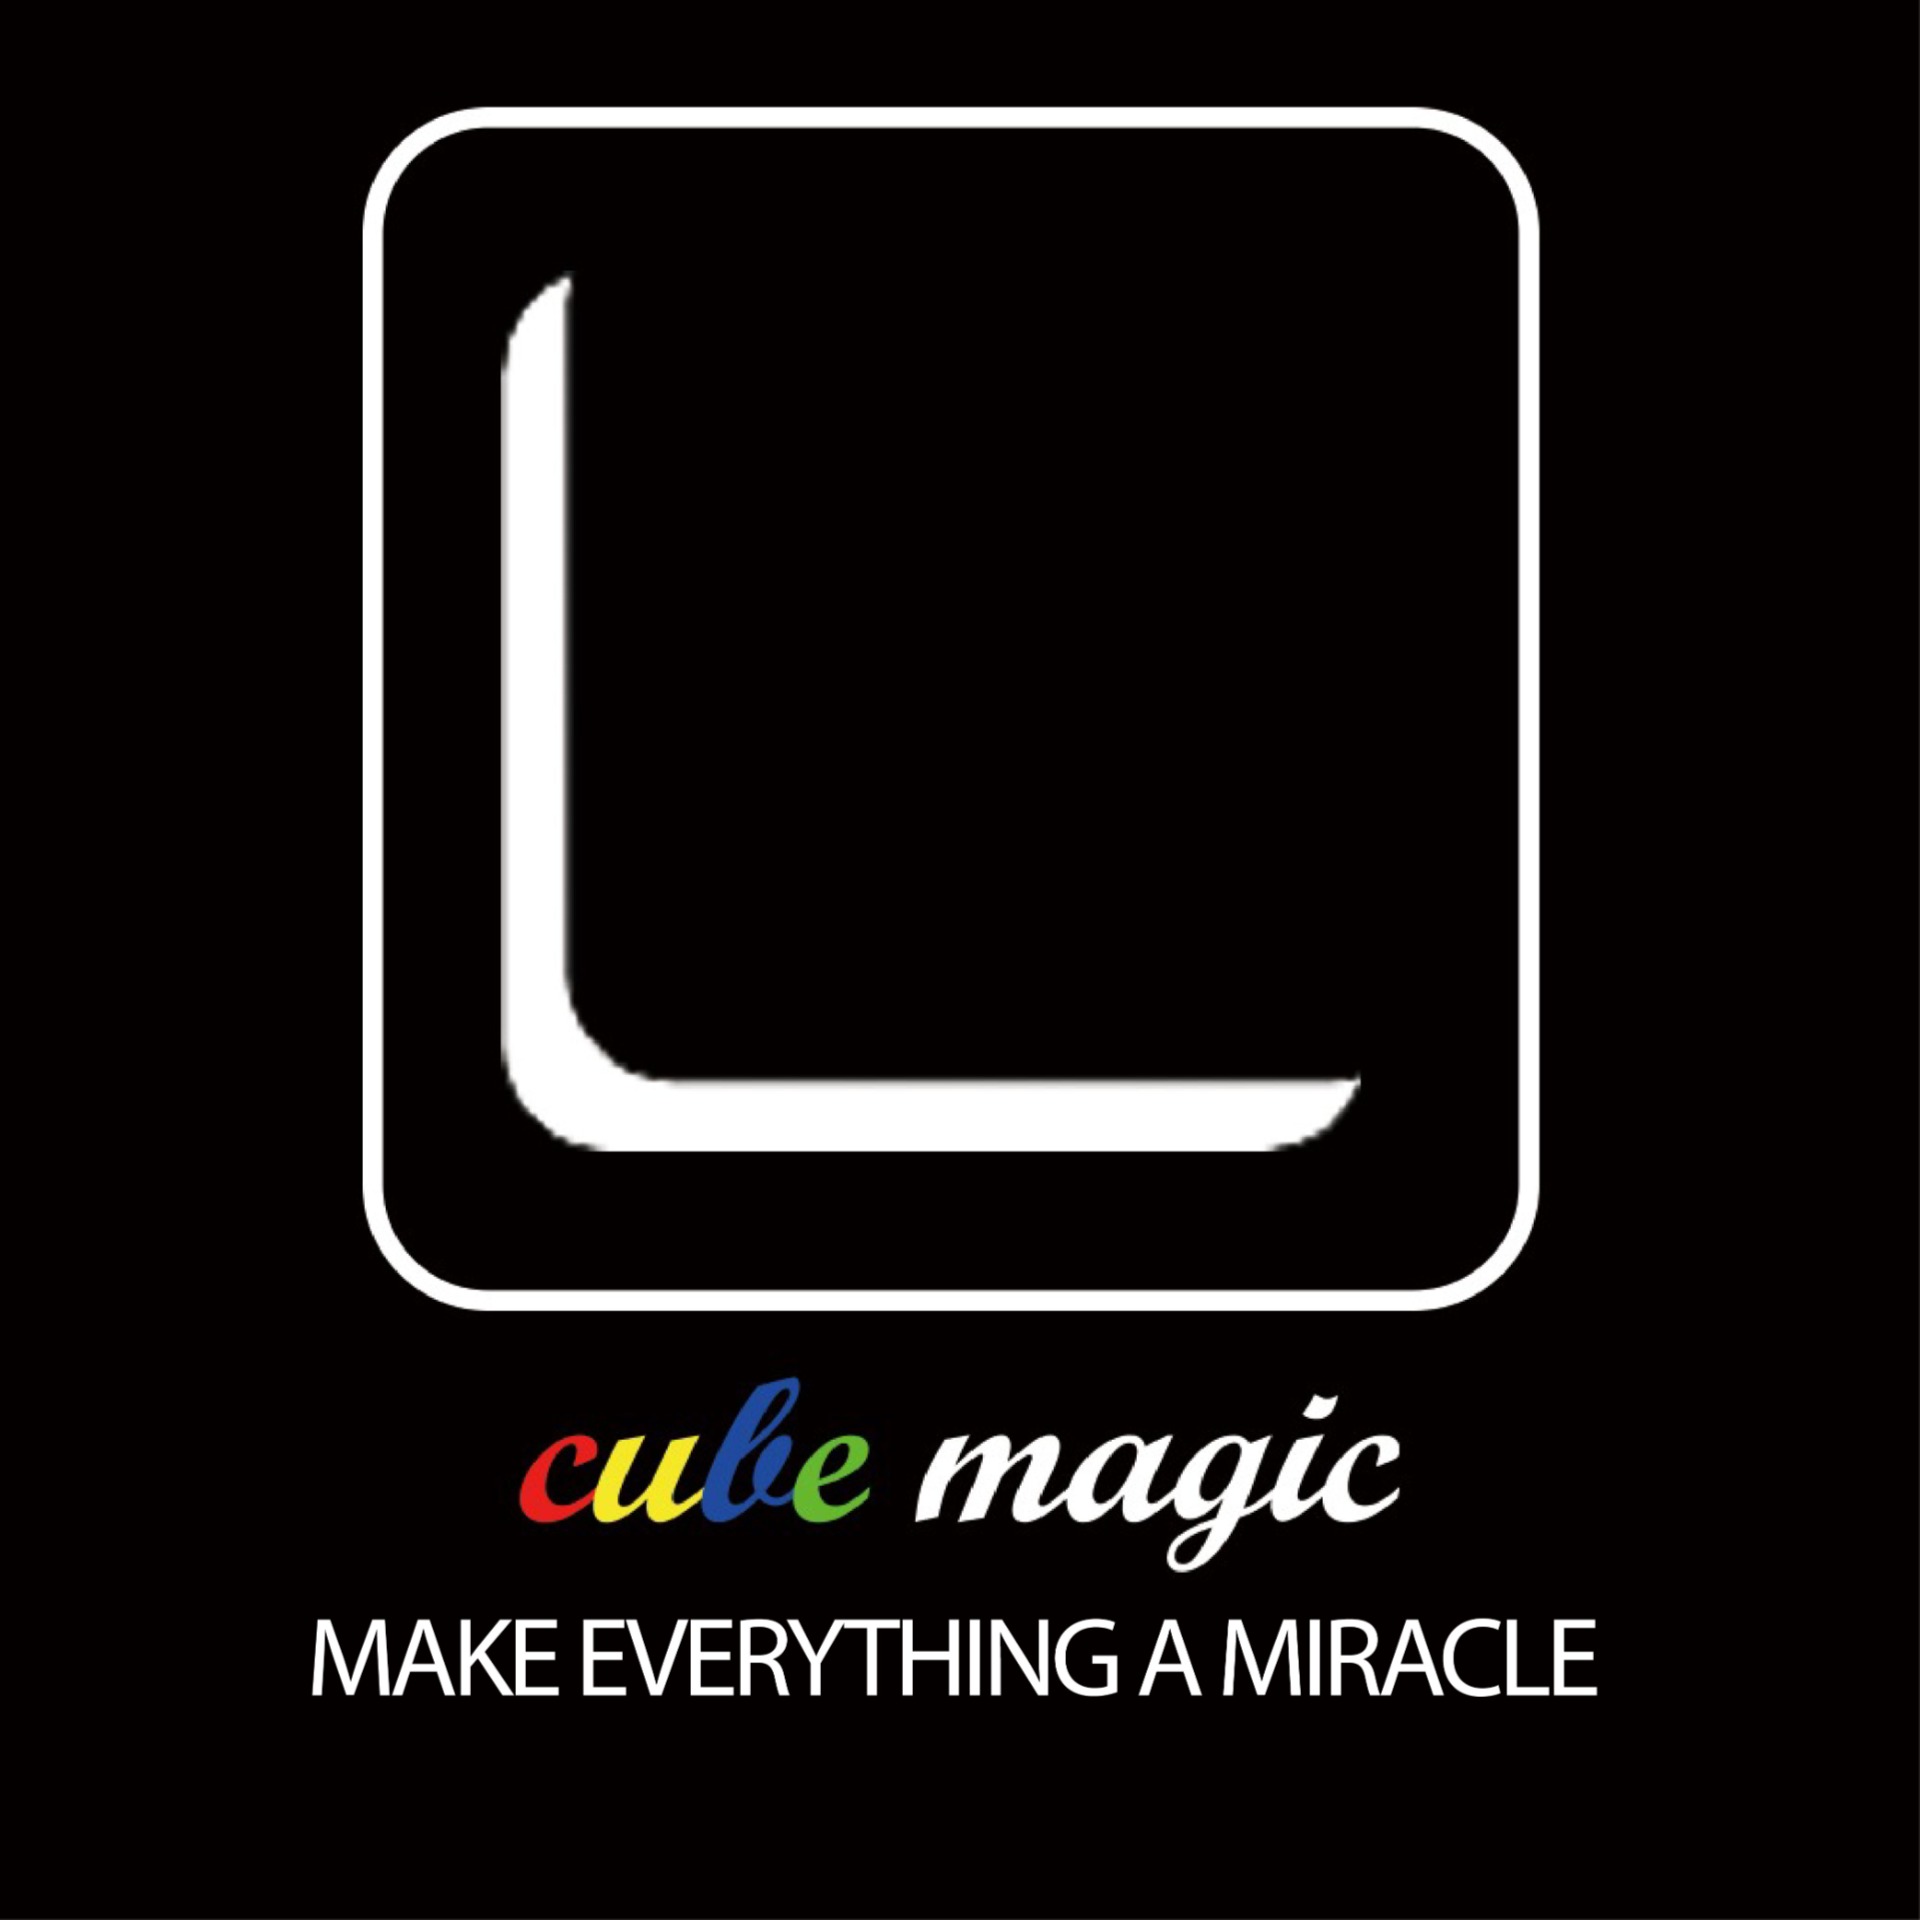 具規模的香港魔術專門店Cube Magic HK